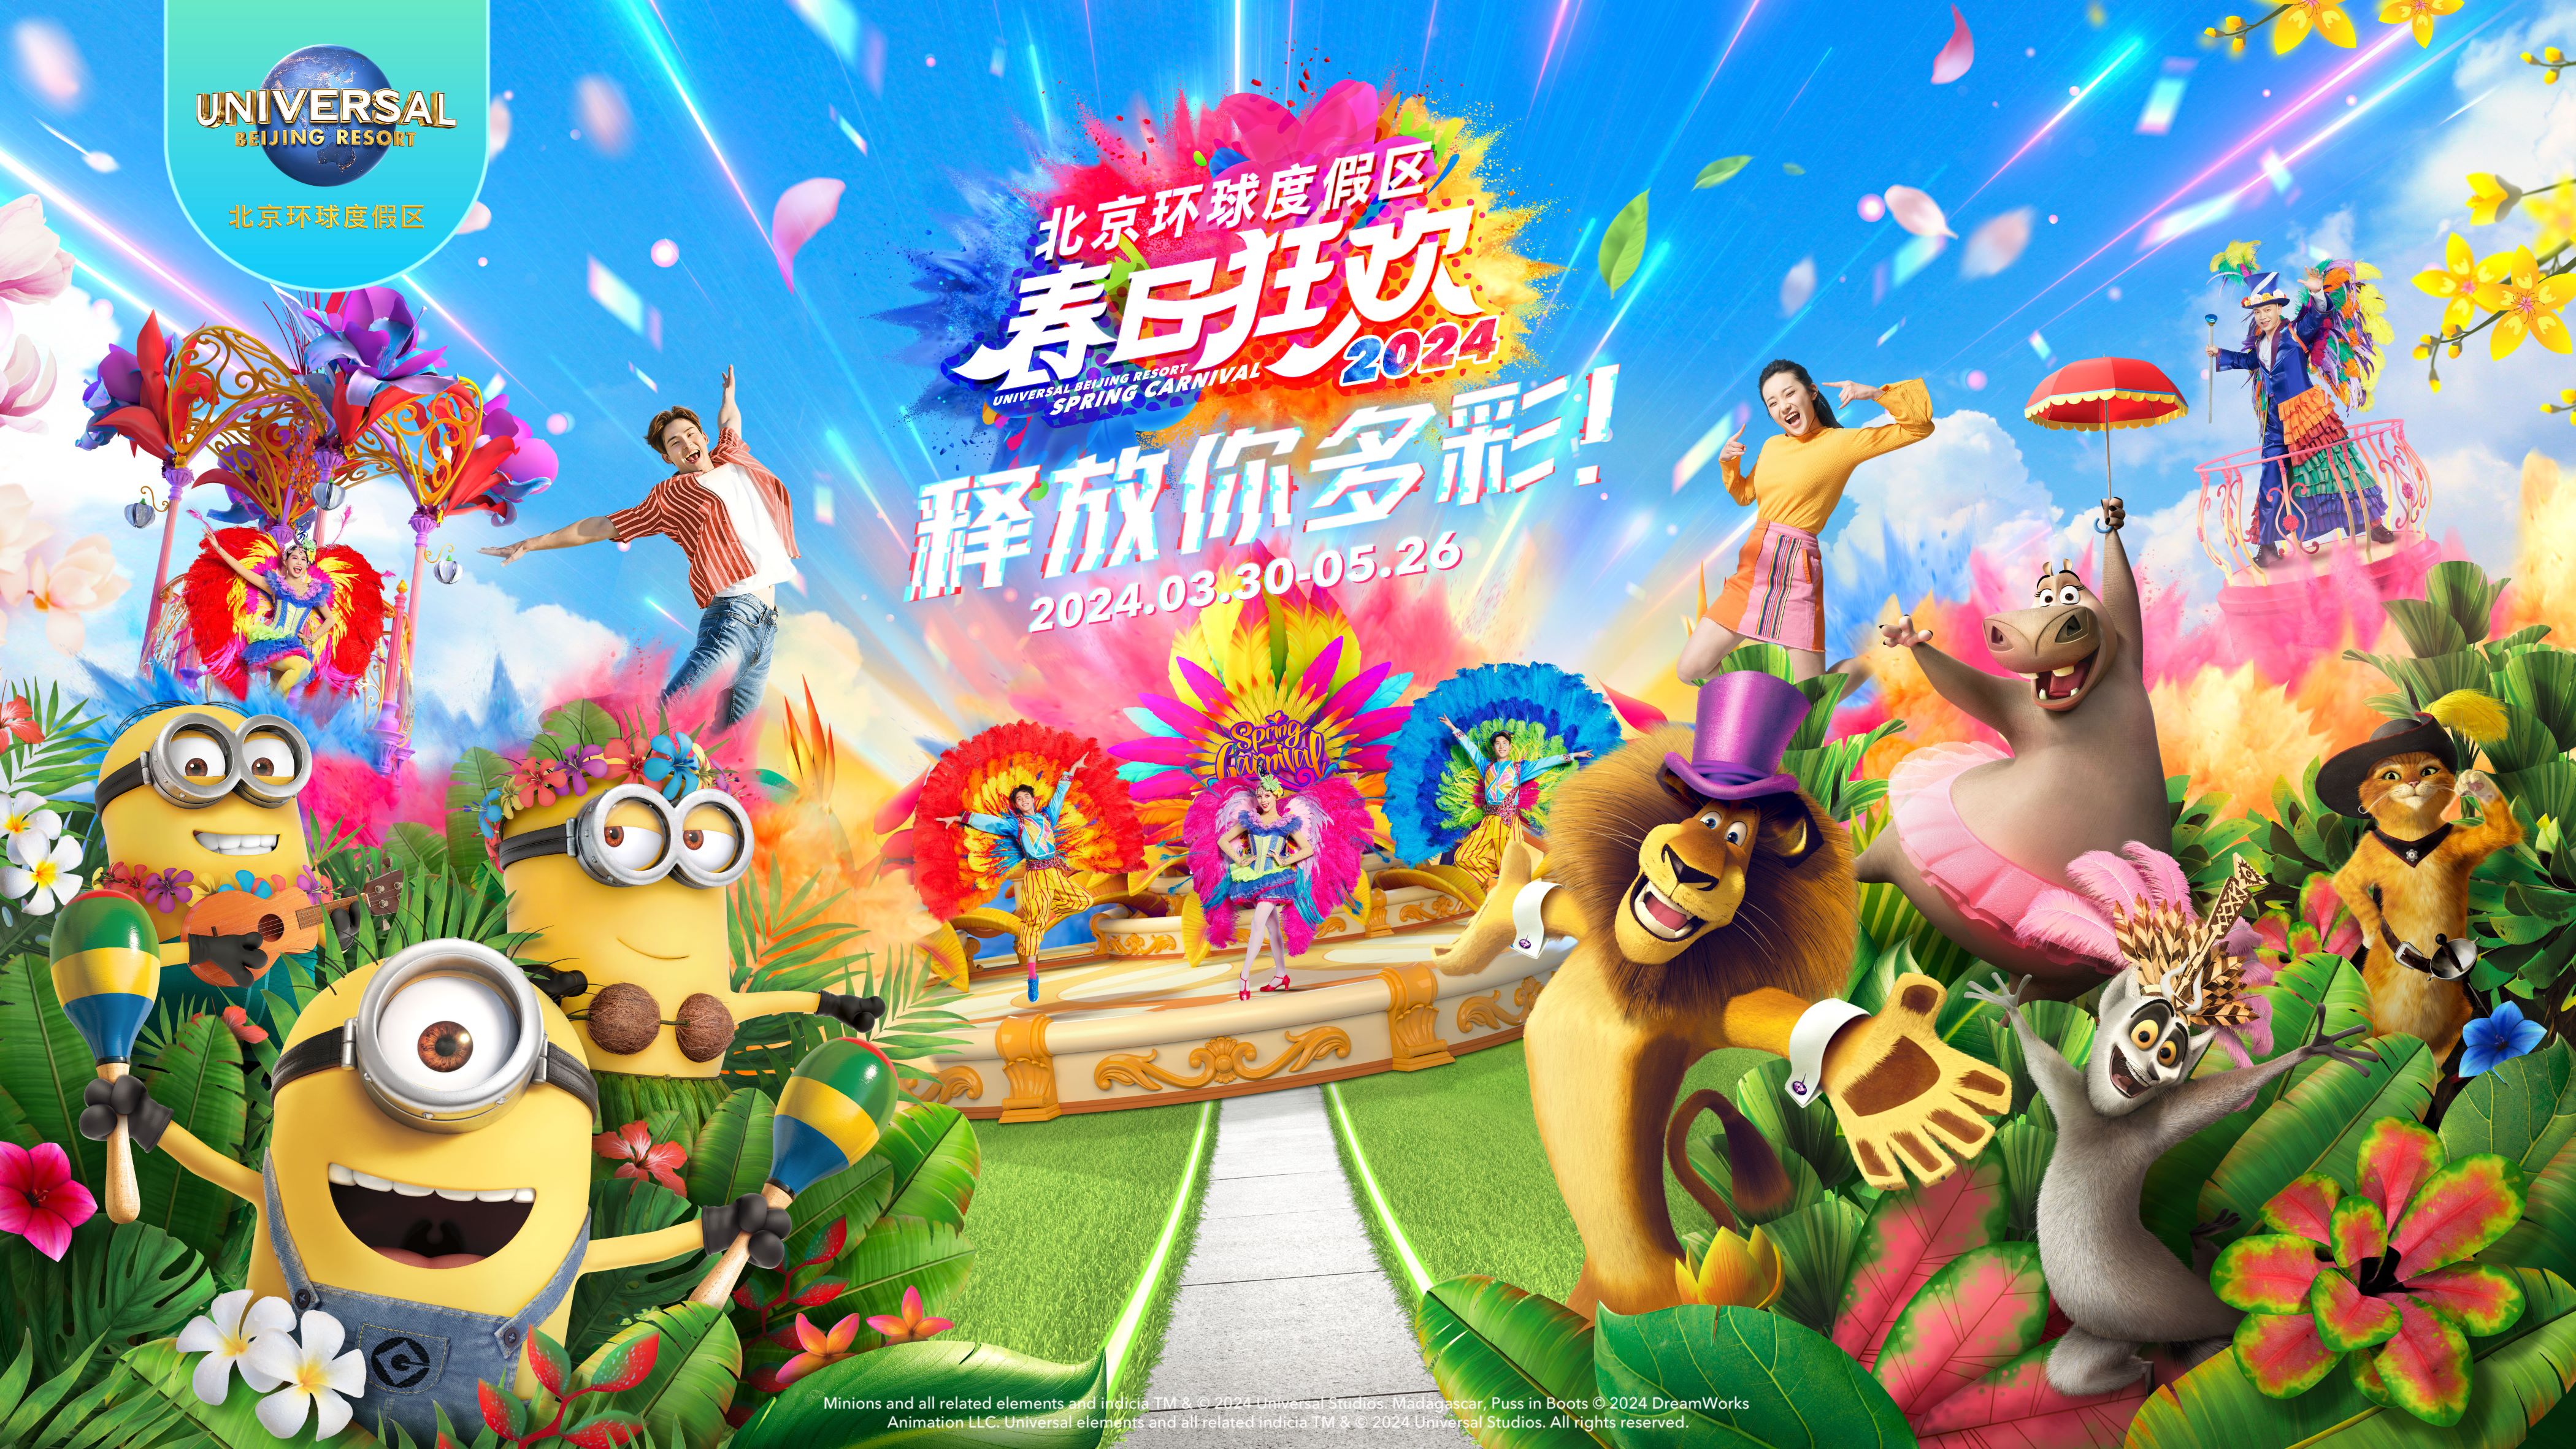 北京环球度假区春日狂欢于2024年3月30日活力开启.jpg